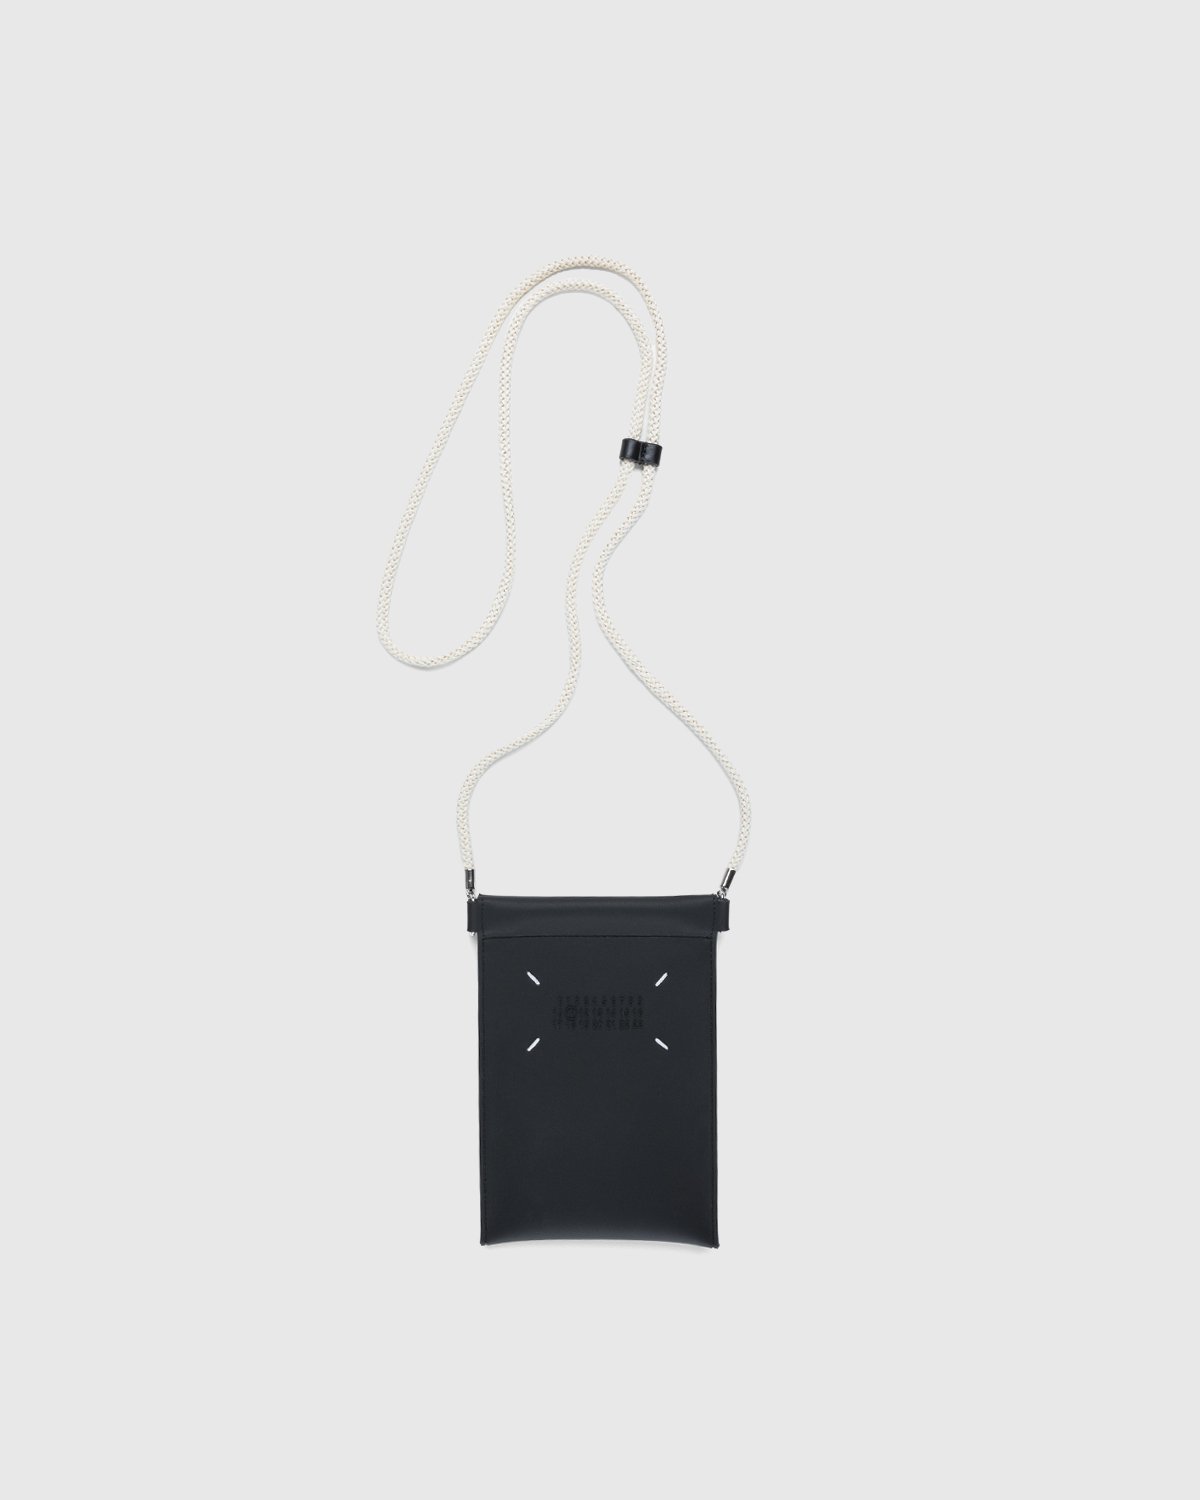 Maison Margiela - Rubber Leather Phone Case Black - Lifestyle - Black - Image 1